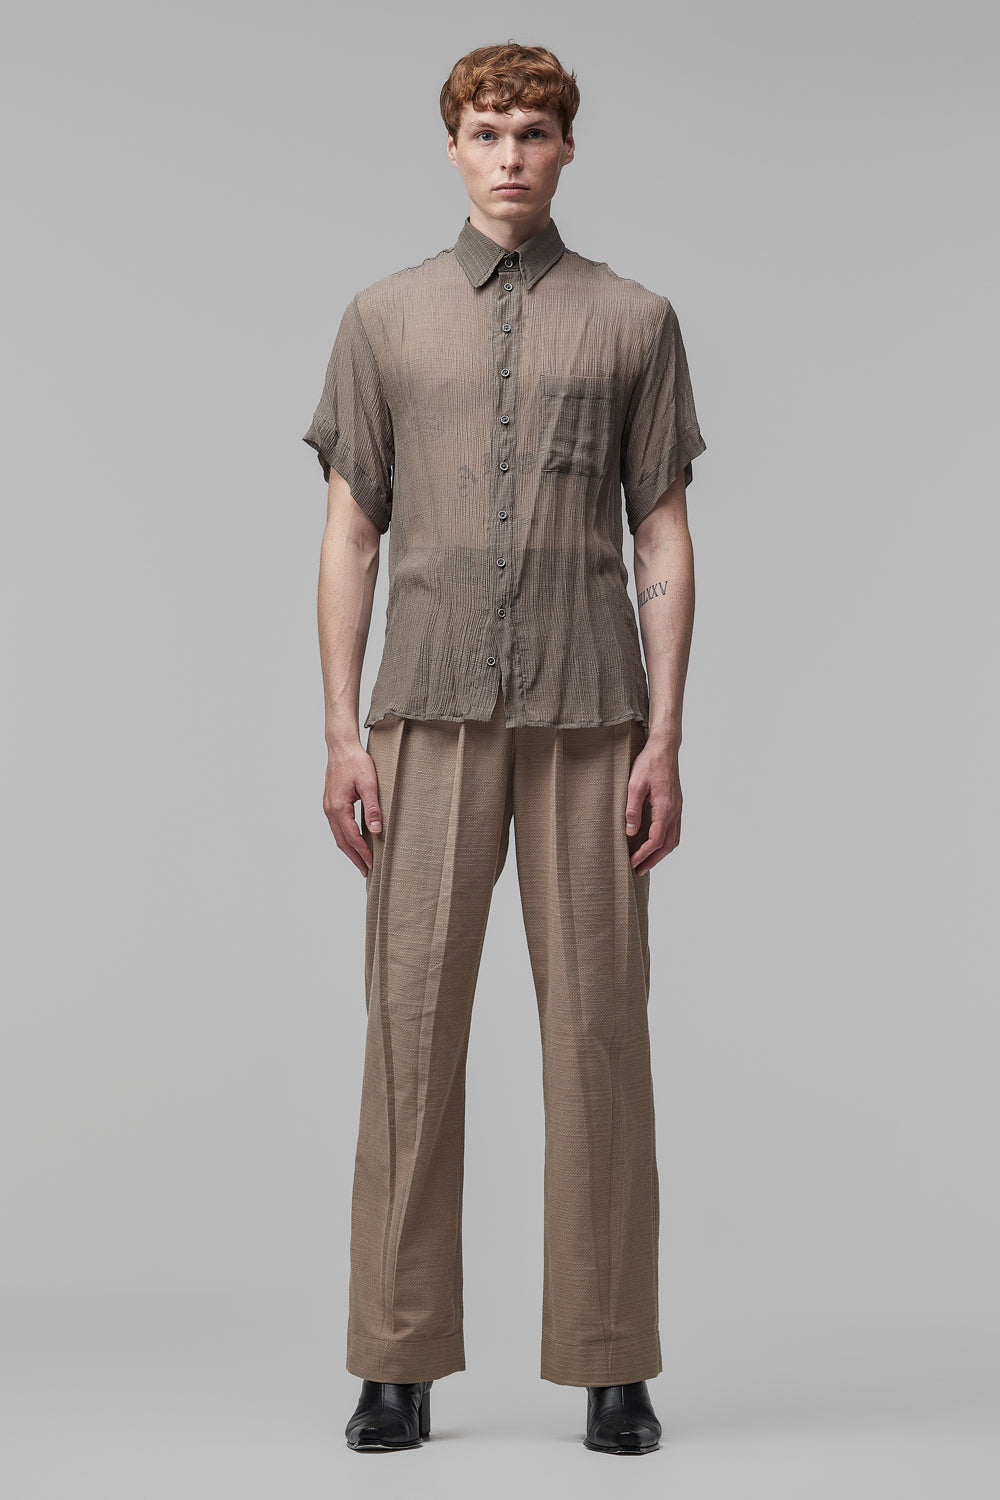 Camisa de Mangas Curtas em Chiffon de Seda Cinza com Detalhe em Relevo